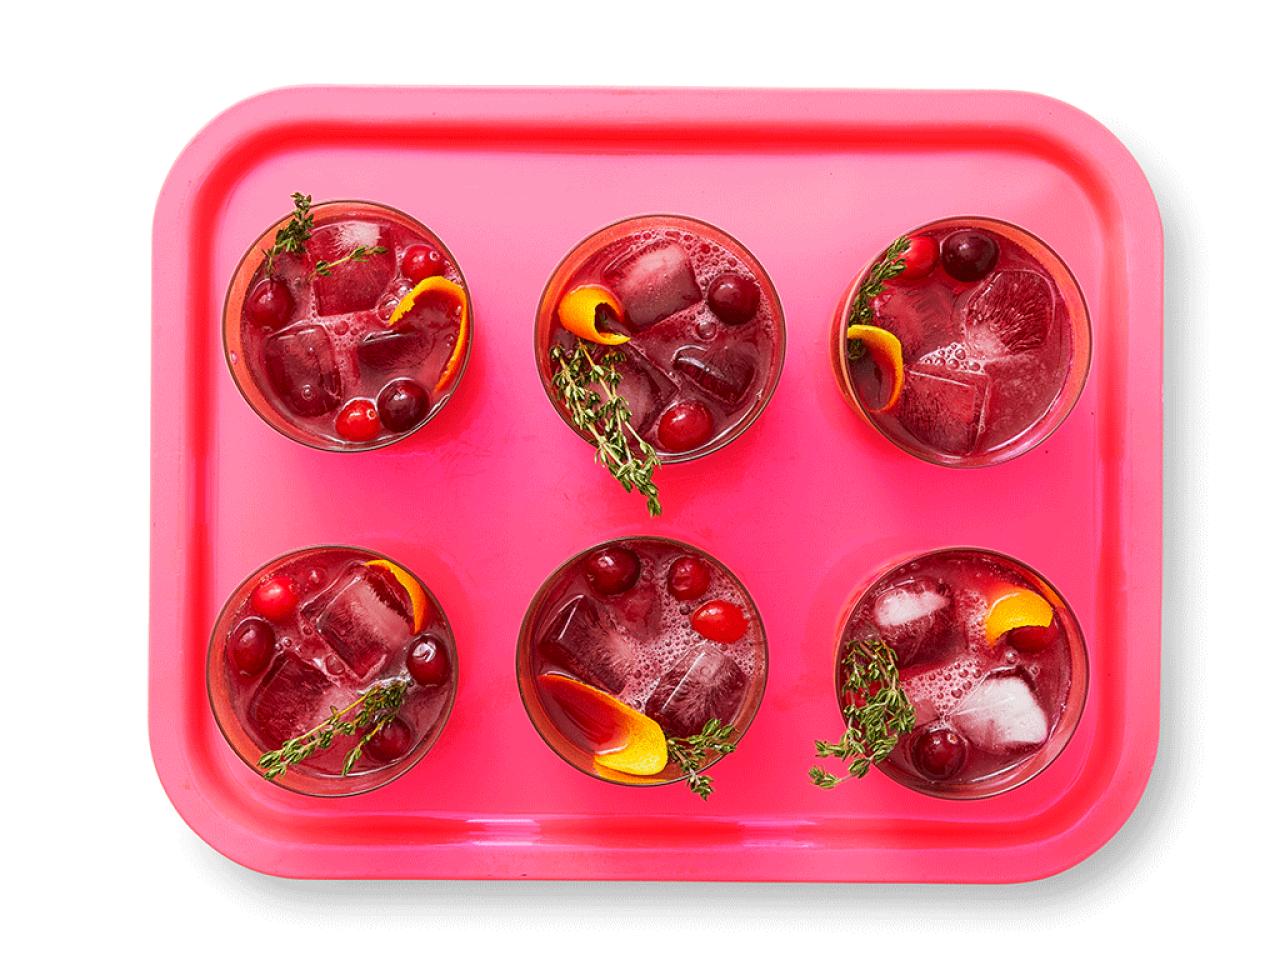 Cranberry gin fizz recipe